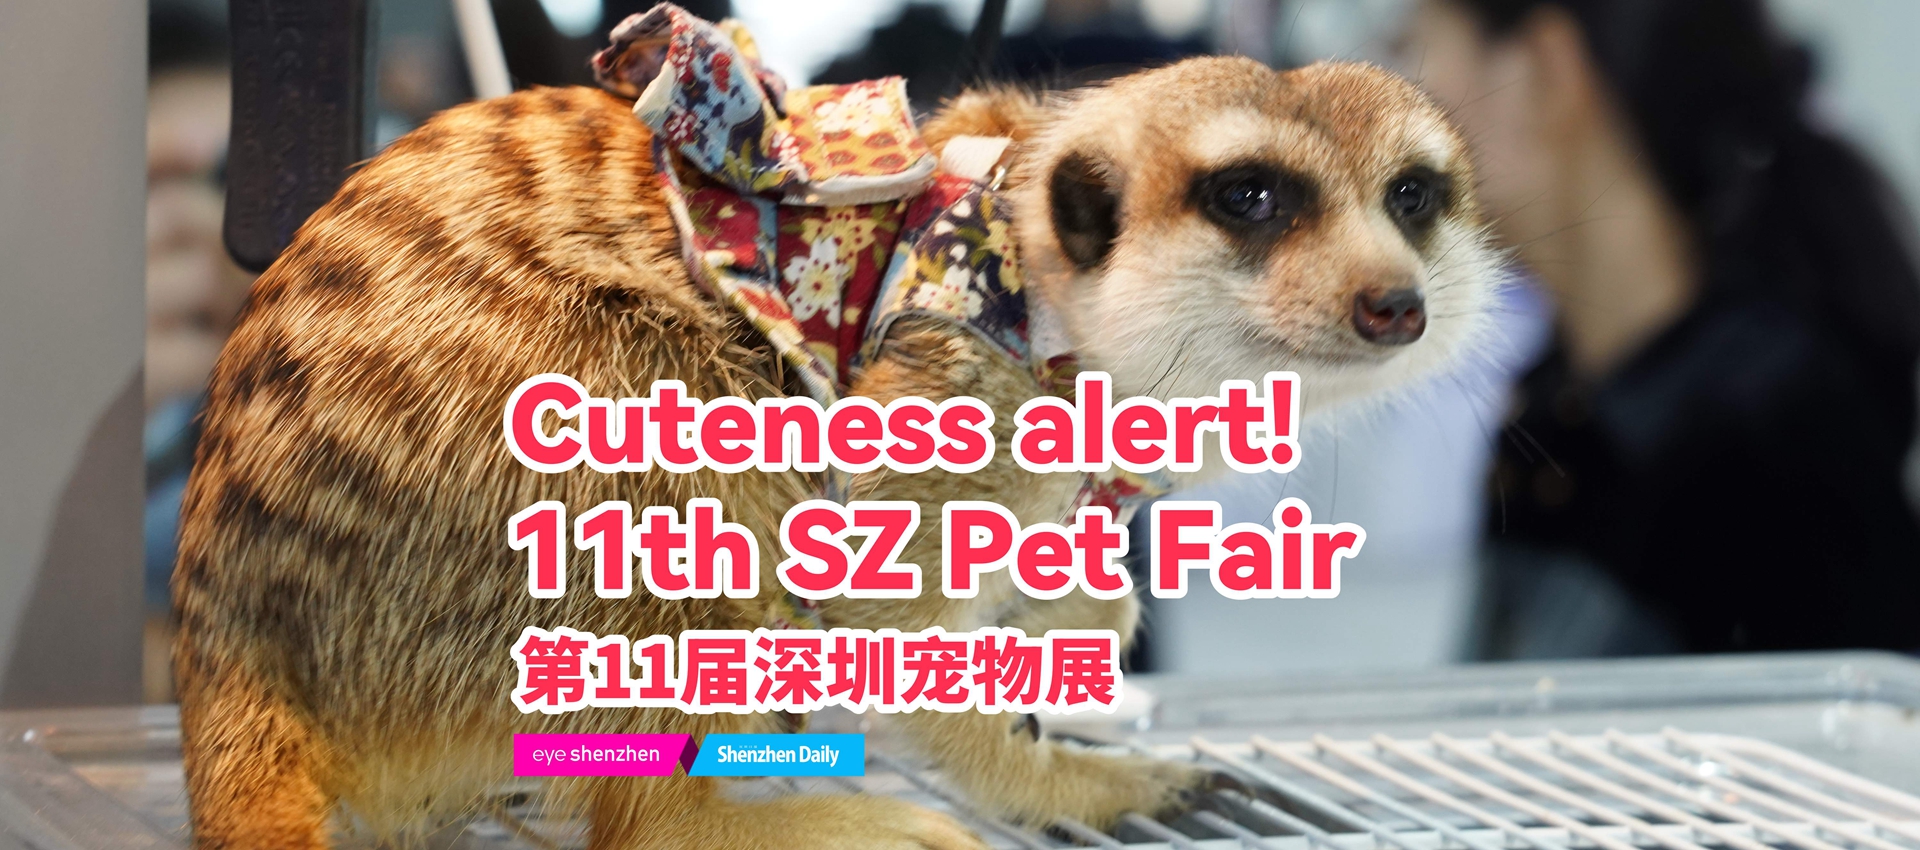 Cuteness alert! 11th SZ Pet Fair